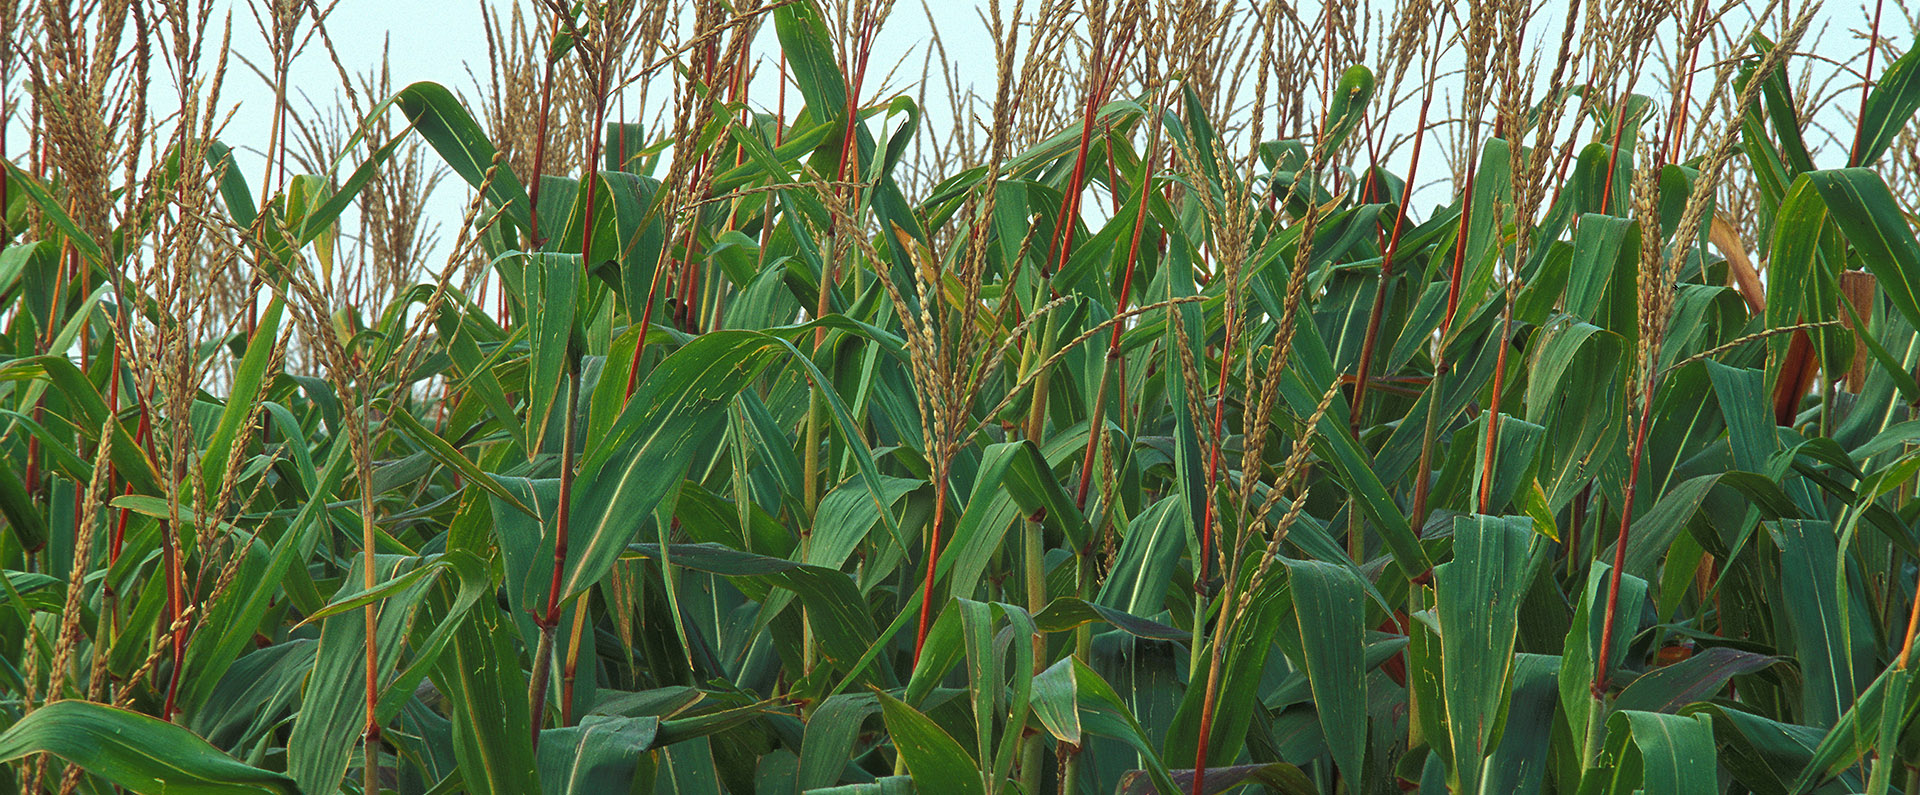 A corn field.